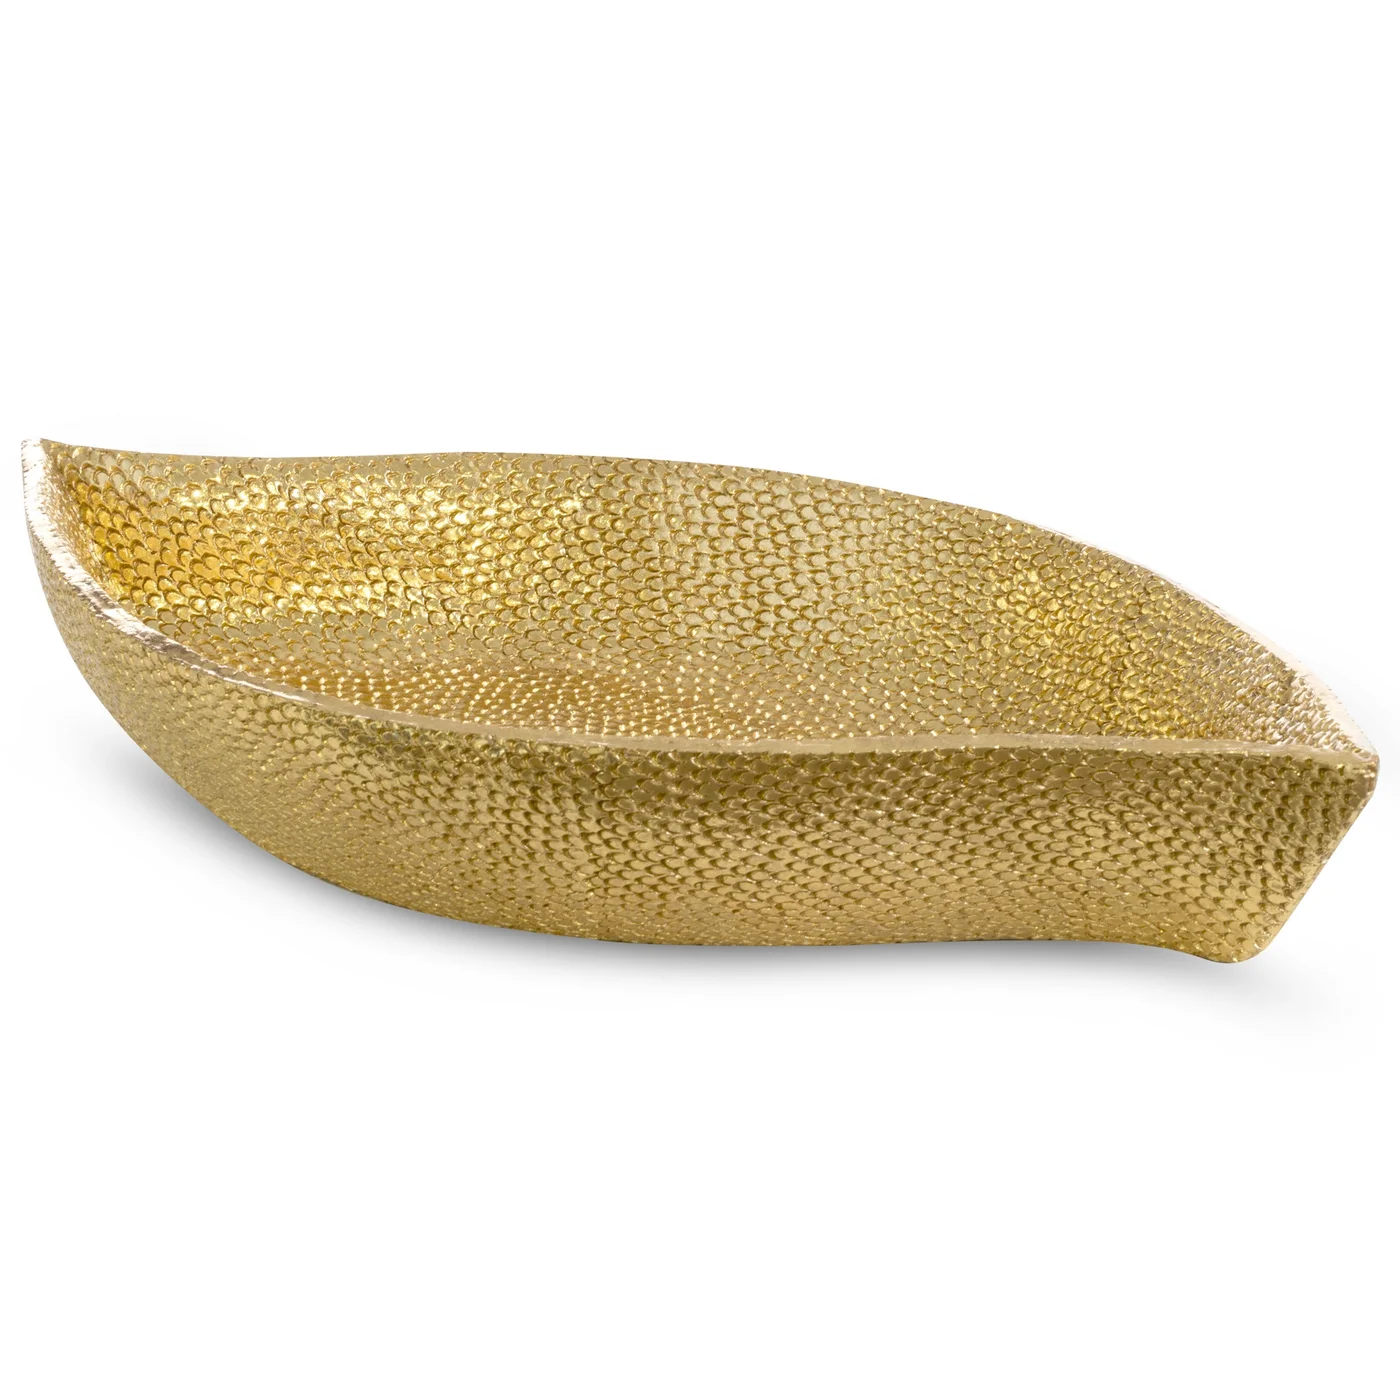 Patera dekoracyjna złota w formie łódki